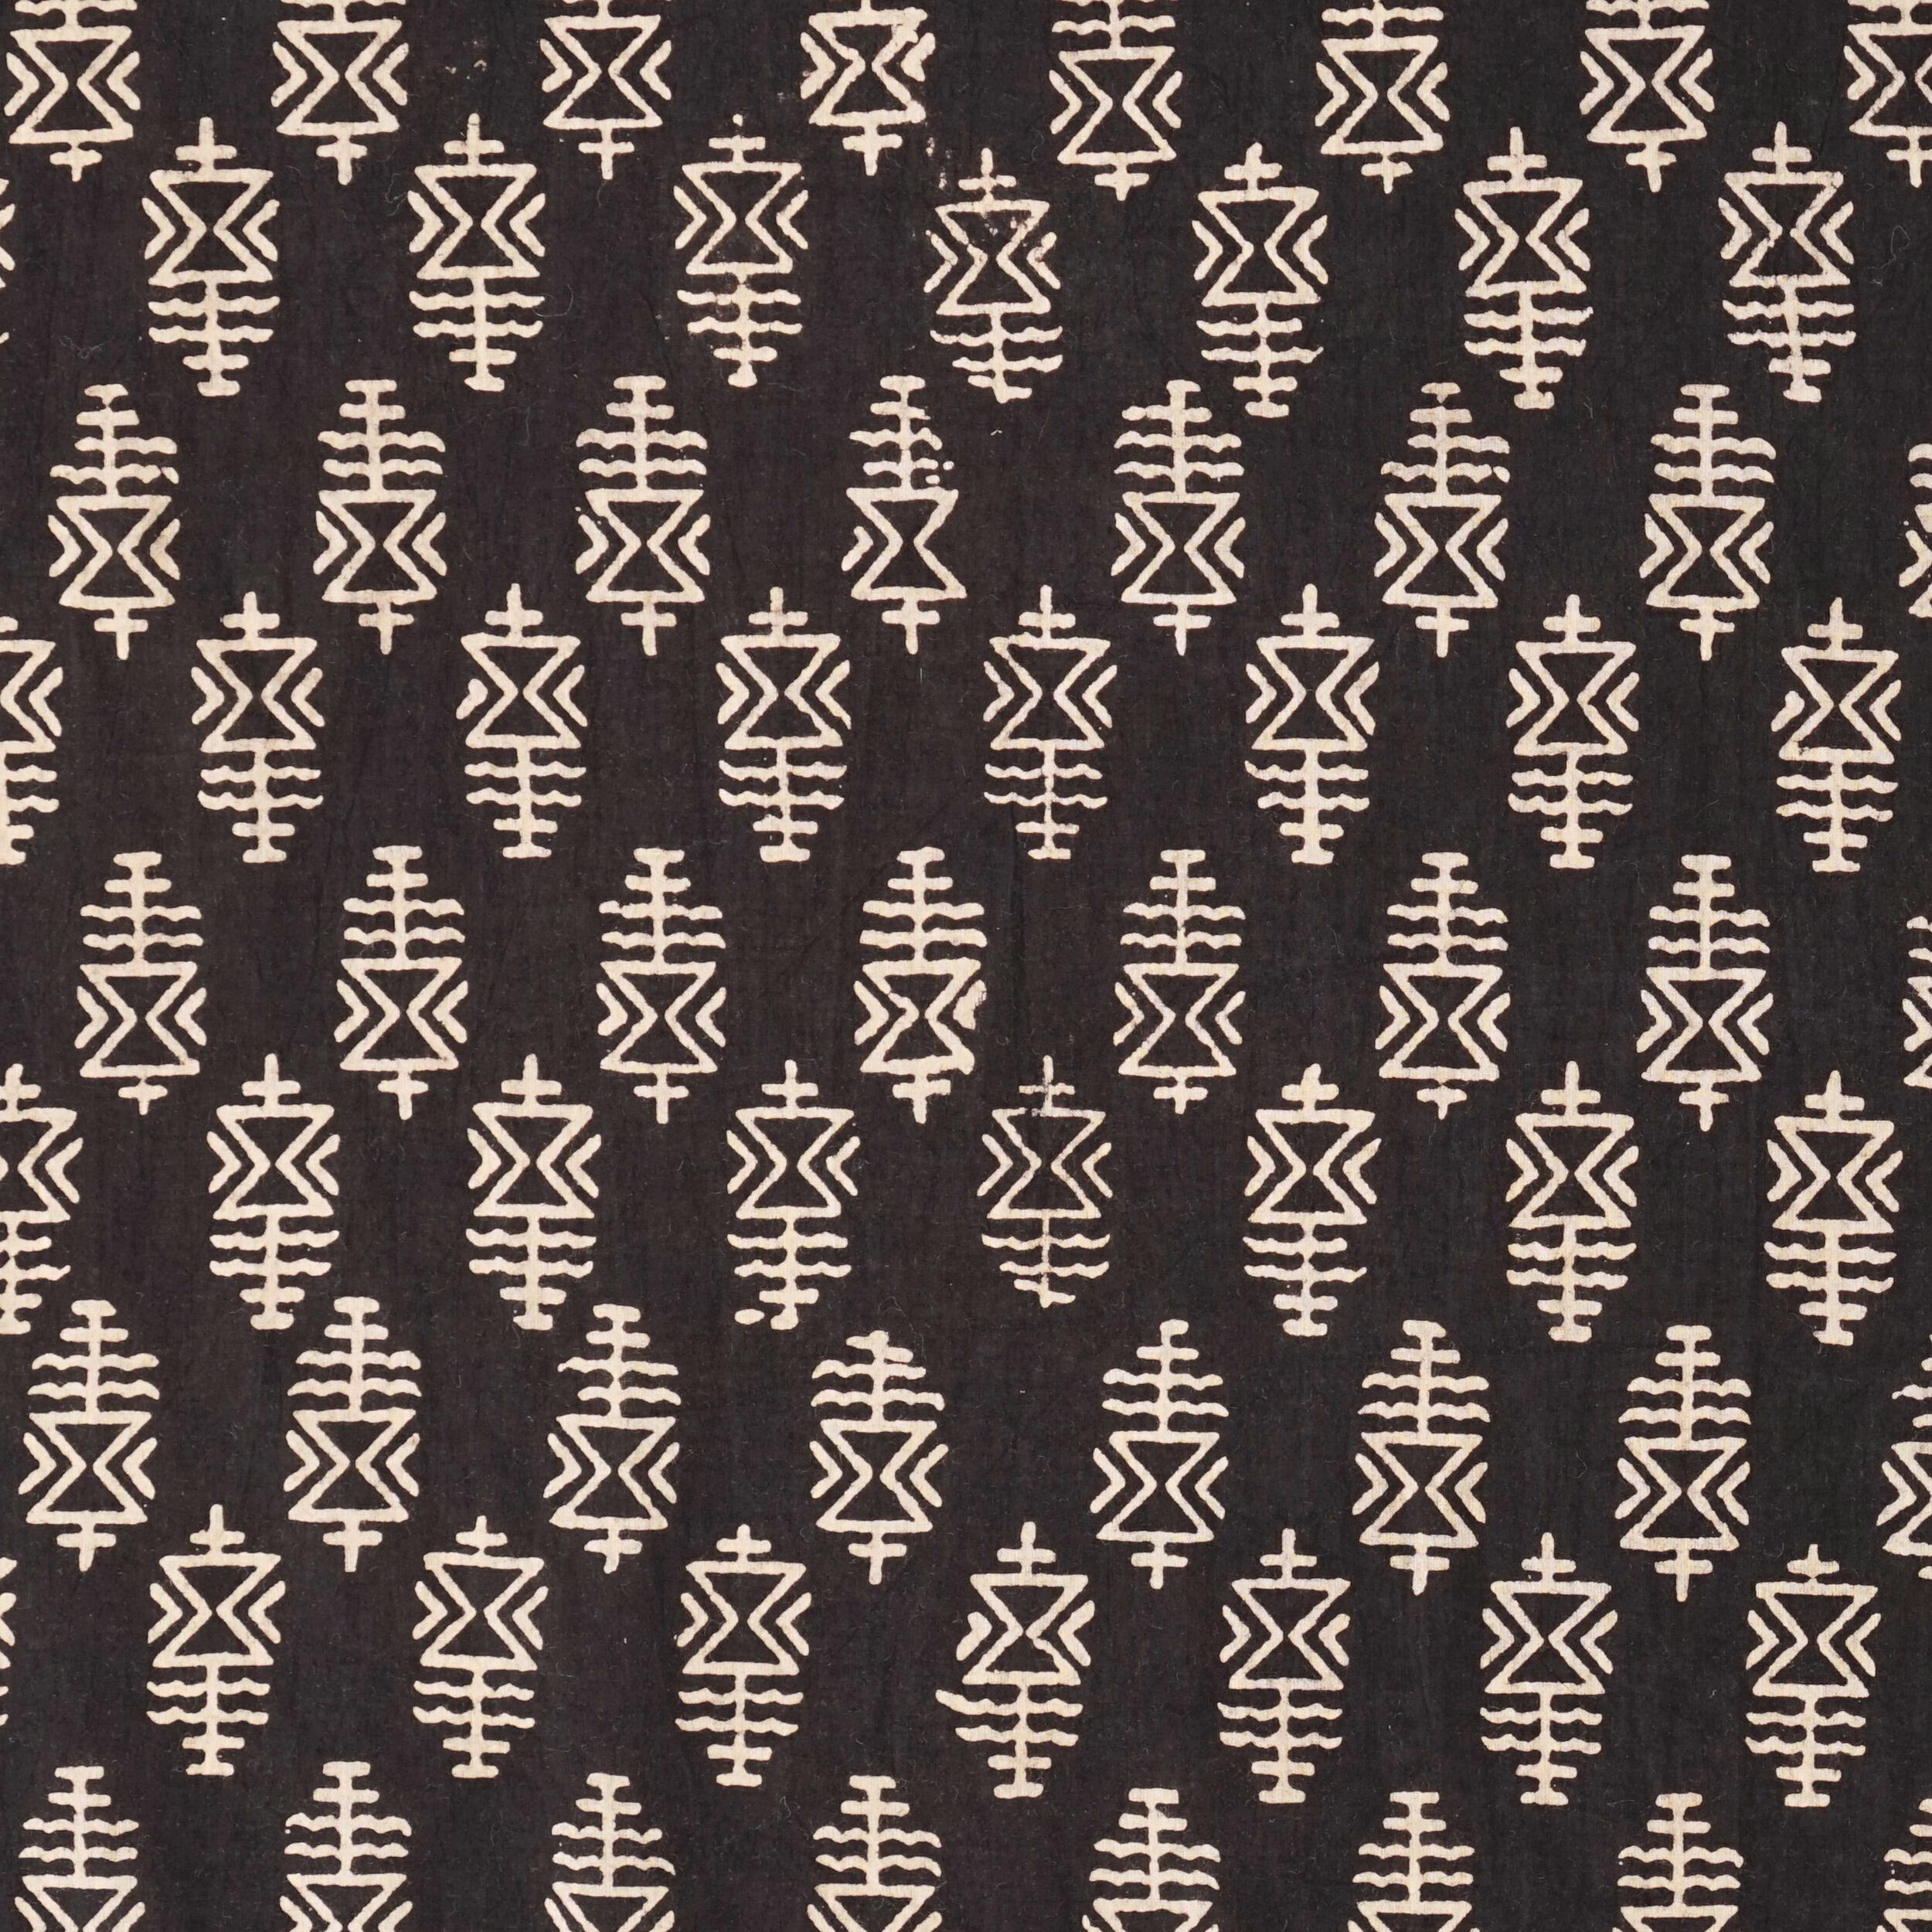 3 - AHM49 - Block-Printed Cotton - Hieroglyphic Print - Black Dye - Flat